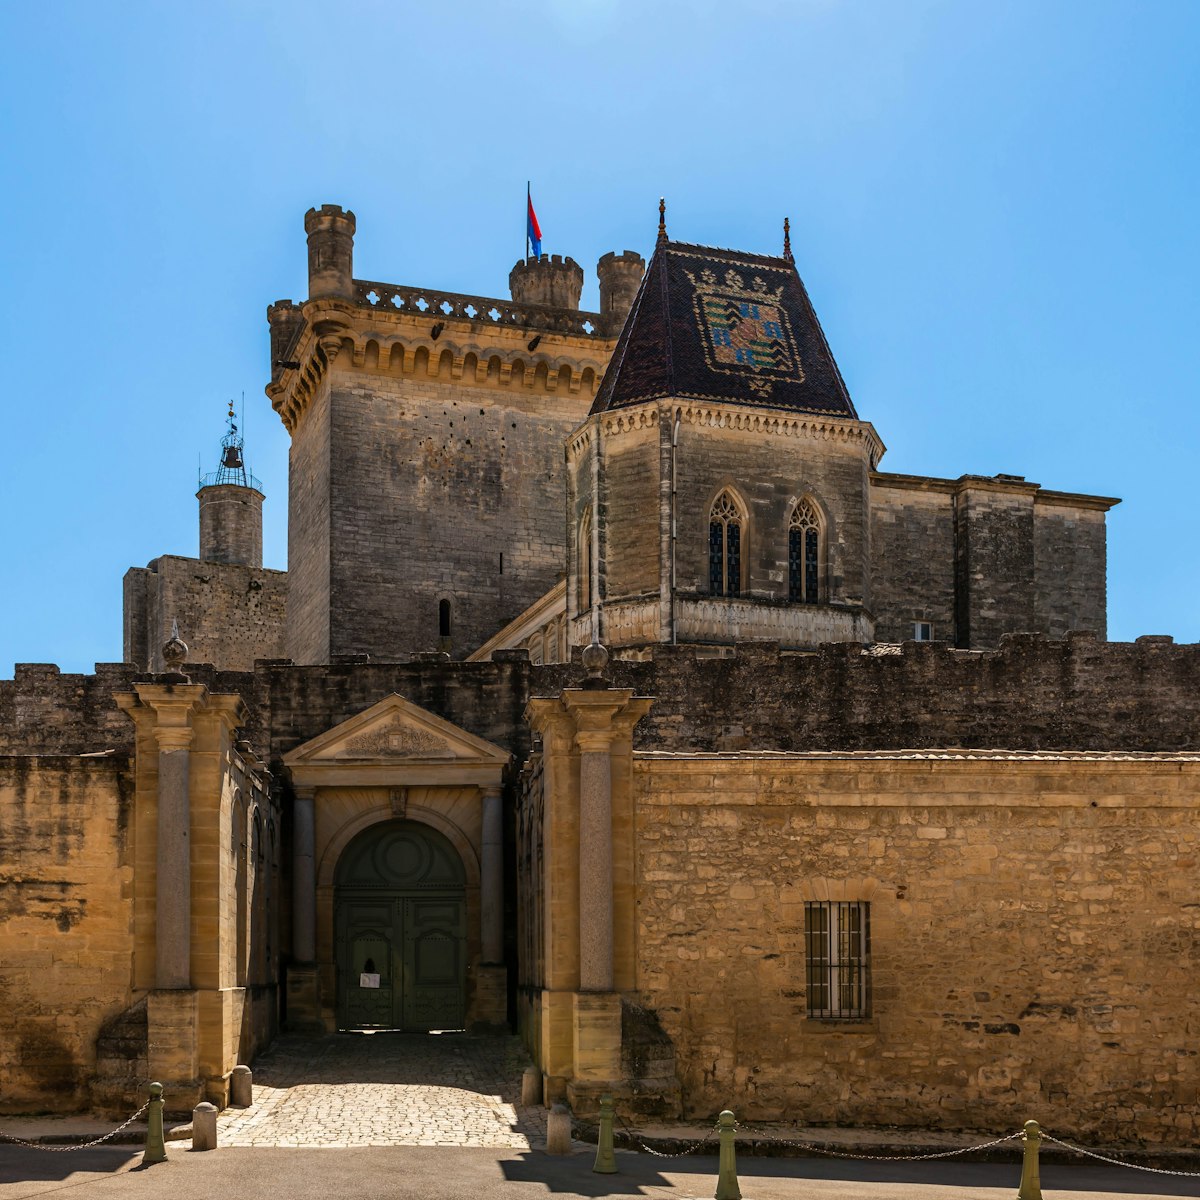 Ducal castle called "The Duchy" of Uzès.